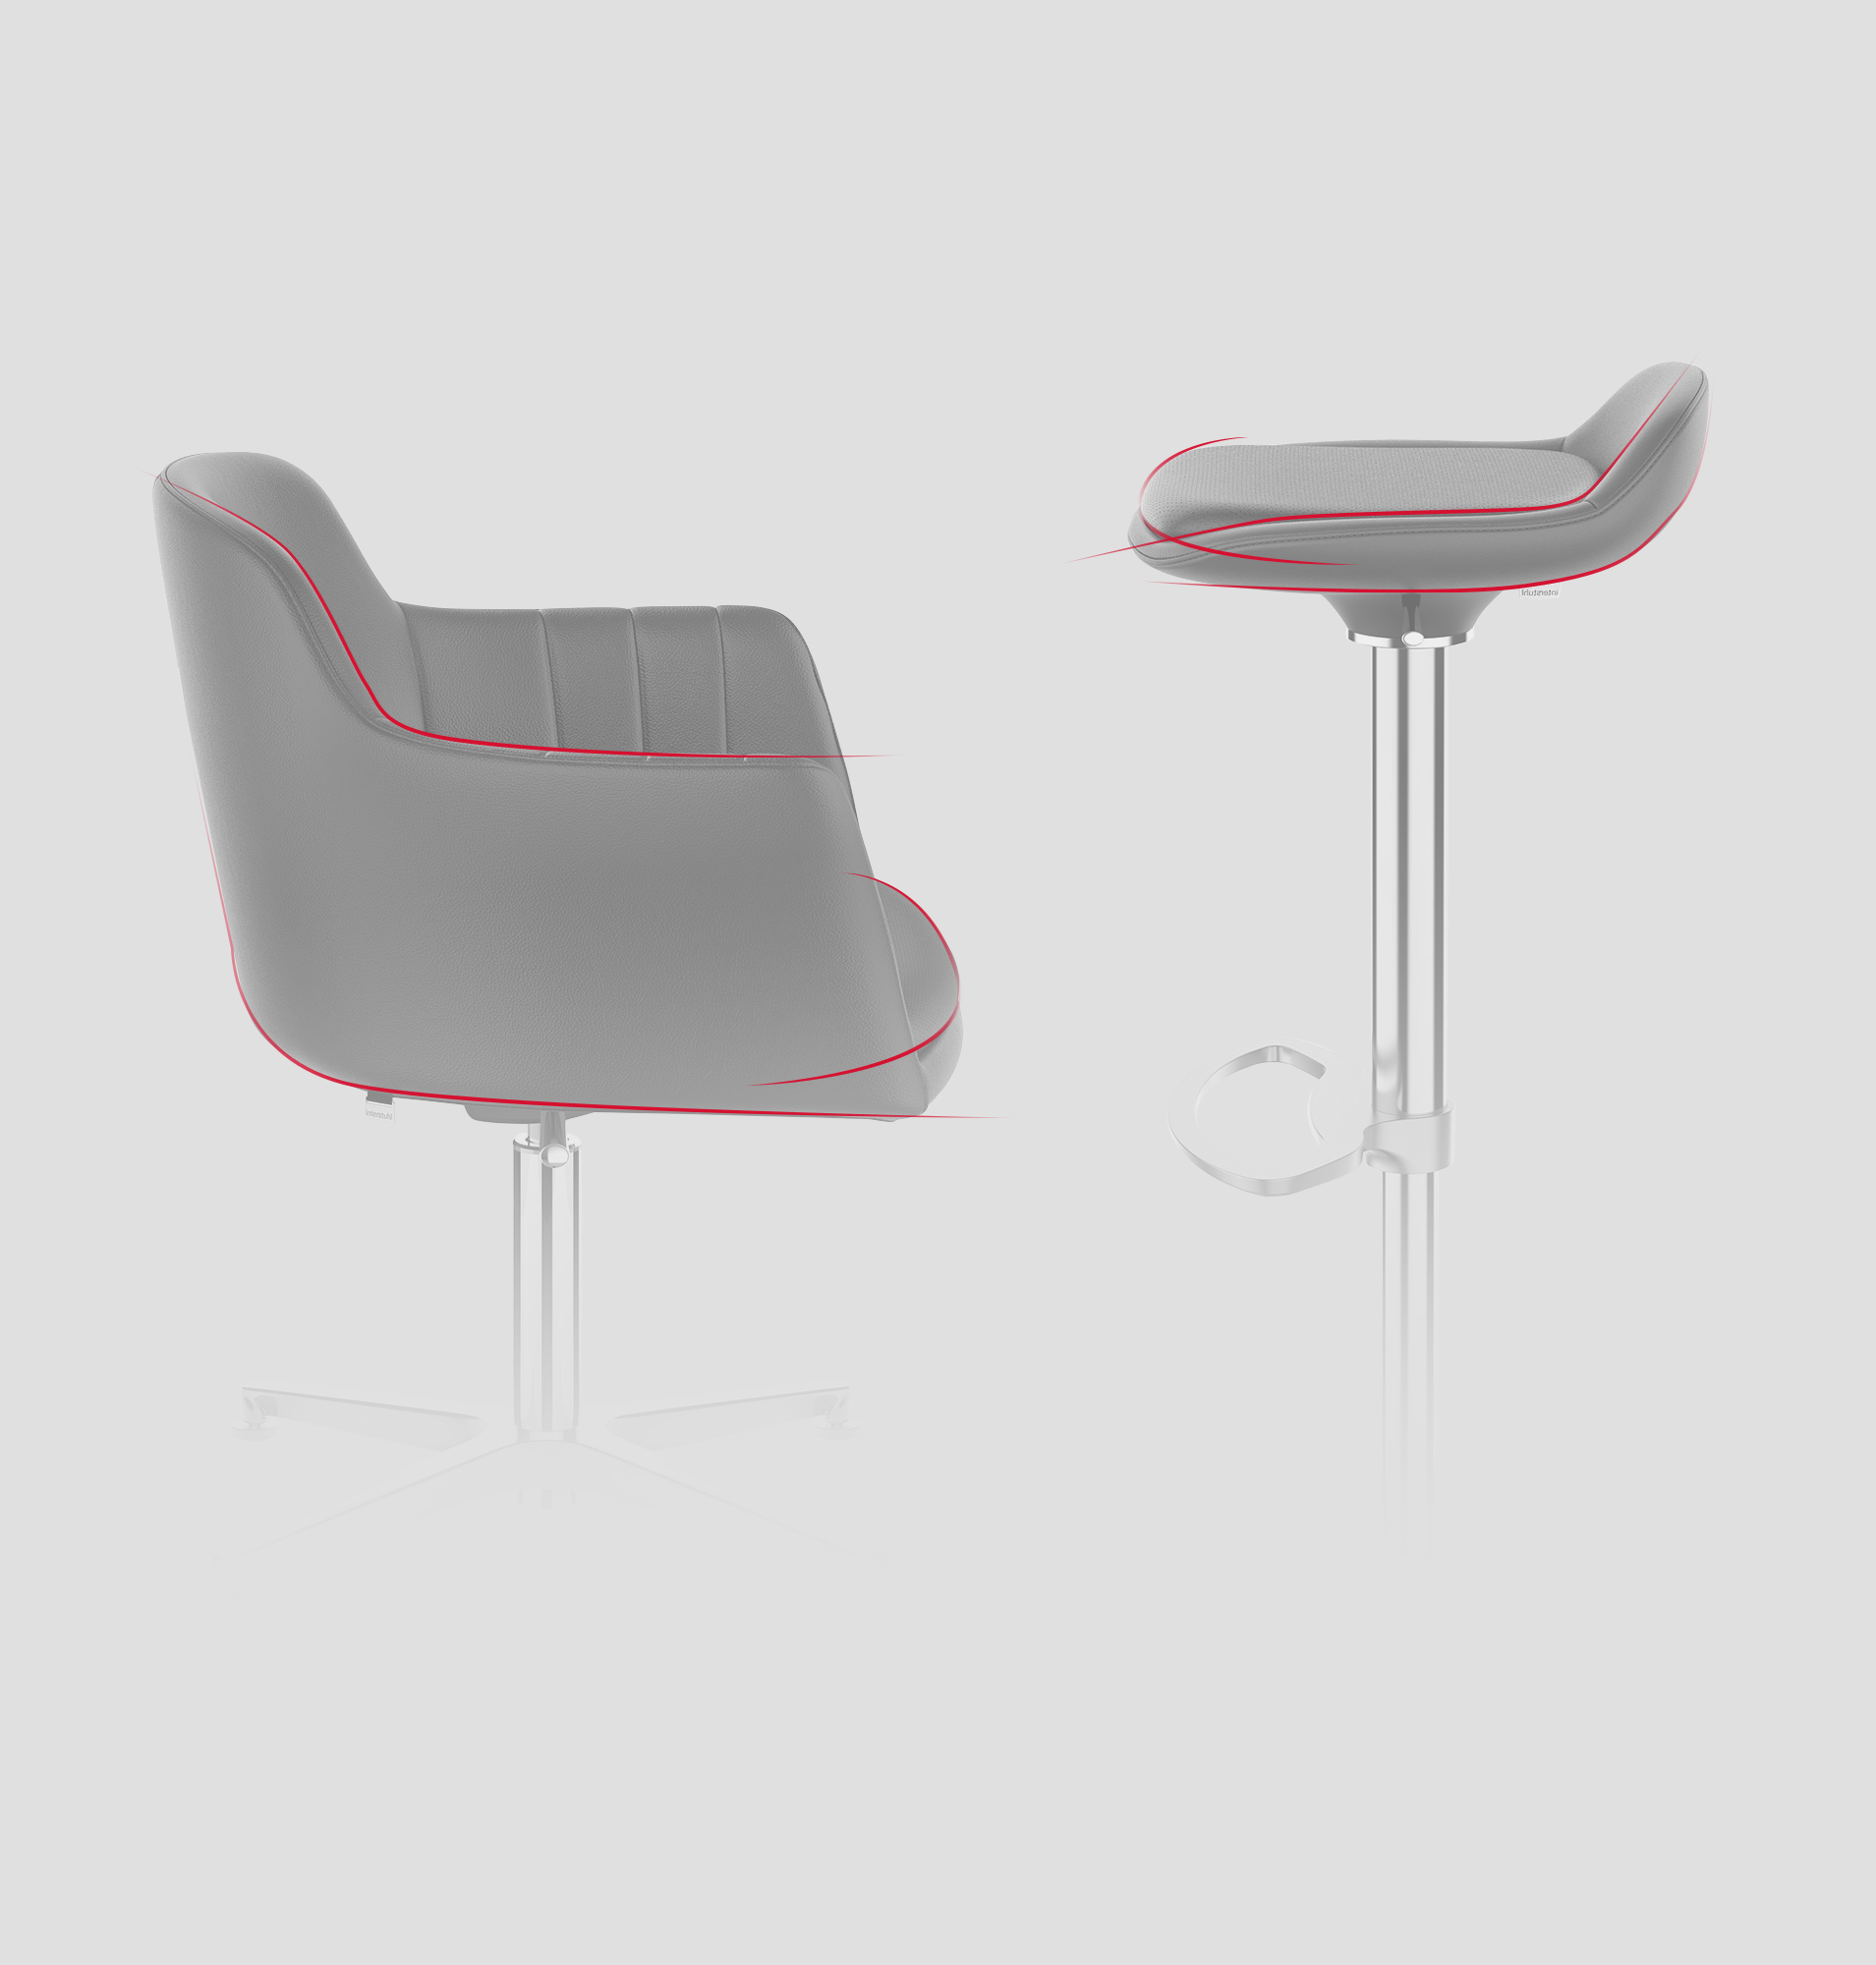 Clubstolen LEMON og barstolen LIME set fra siden med fremhævning af konturerne ved hjælp af dynamiske linjer | by studiokurbos og Interstuhl